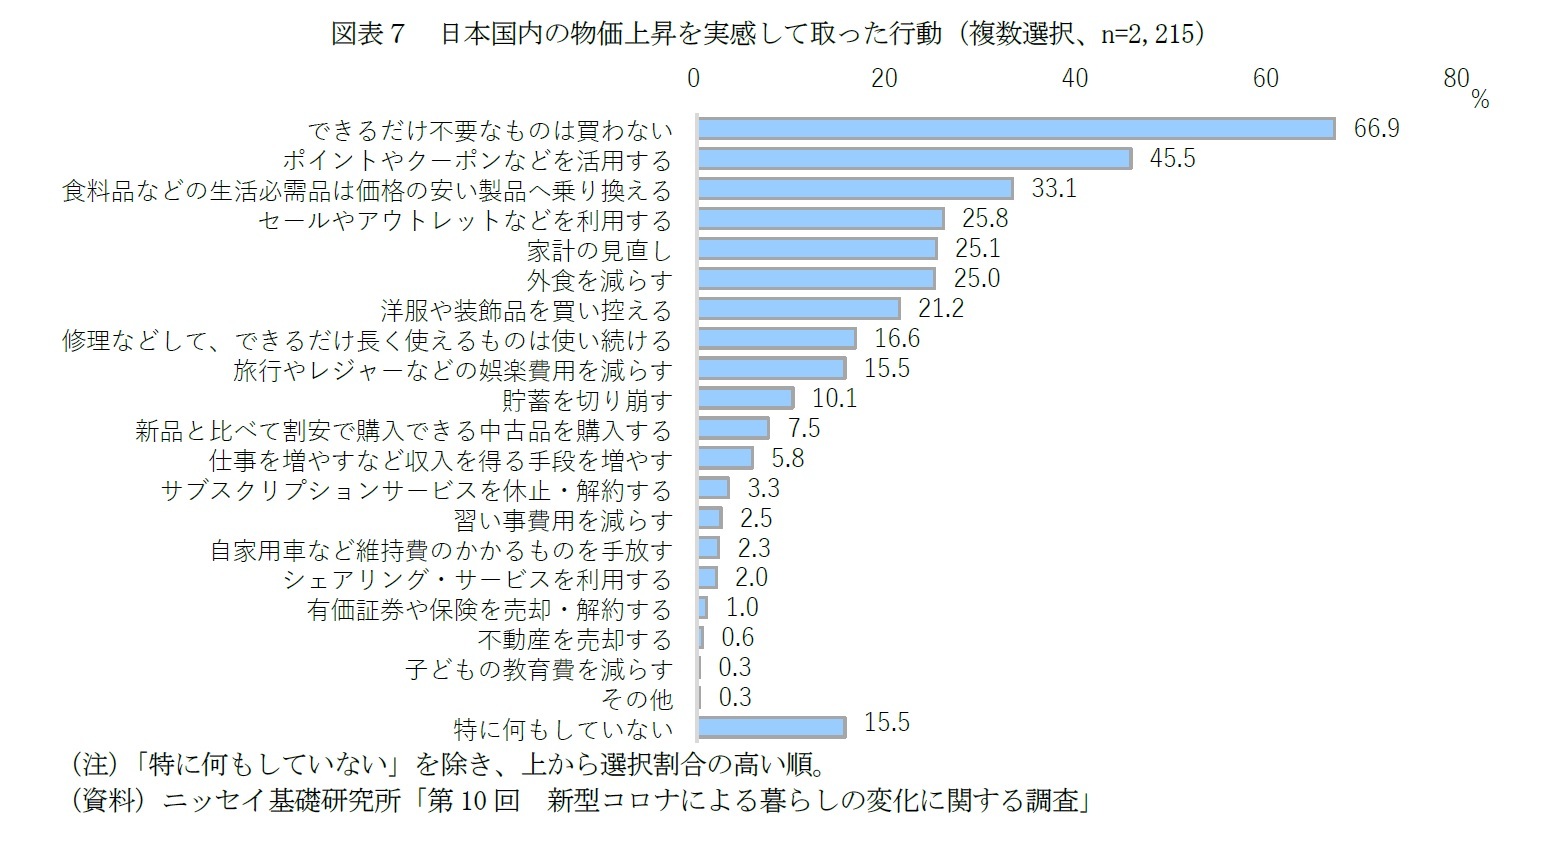 図表７　日本国内の物価上昇を実感して取った行動（複数選択、n=2,215）